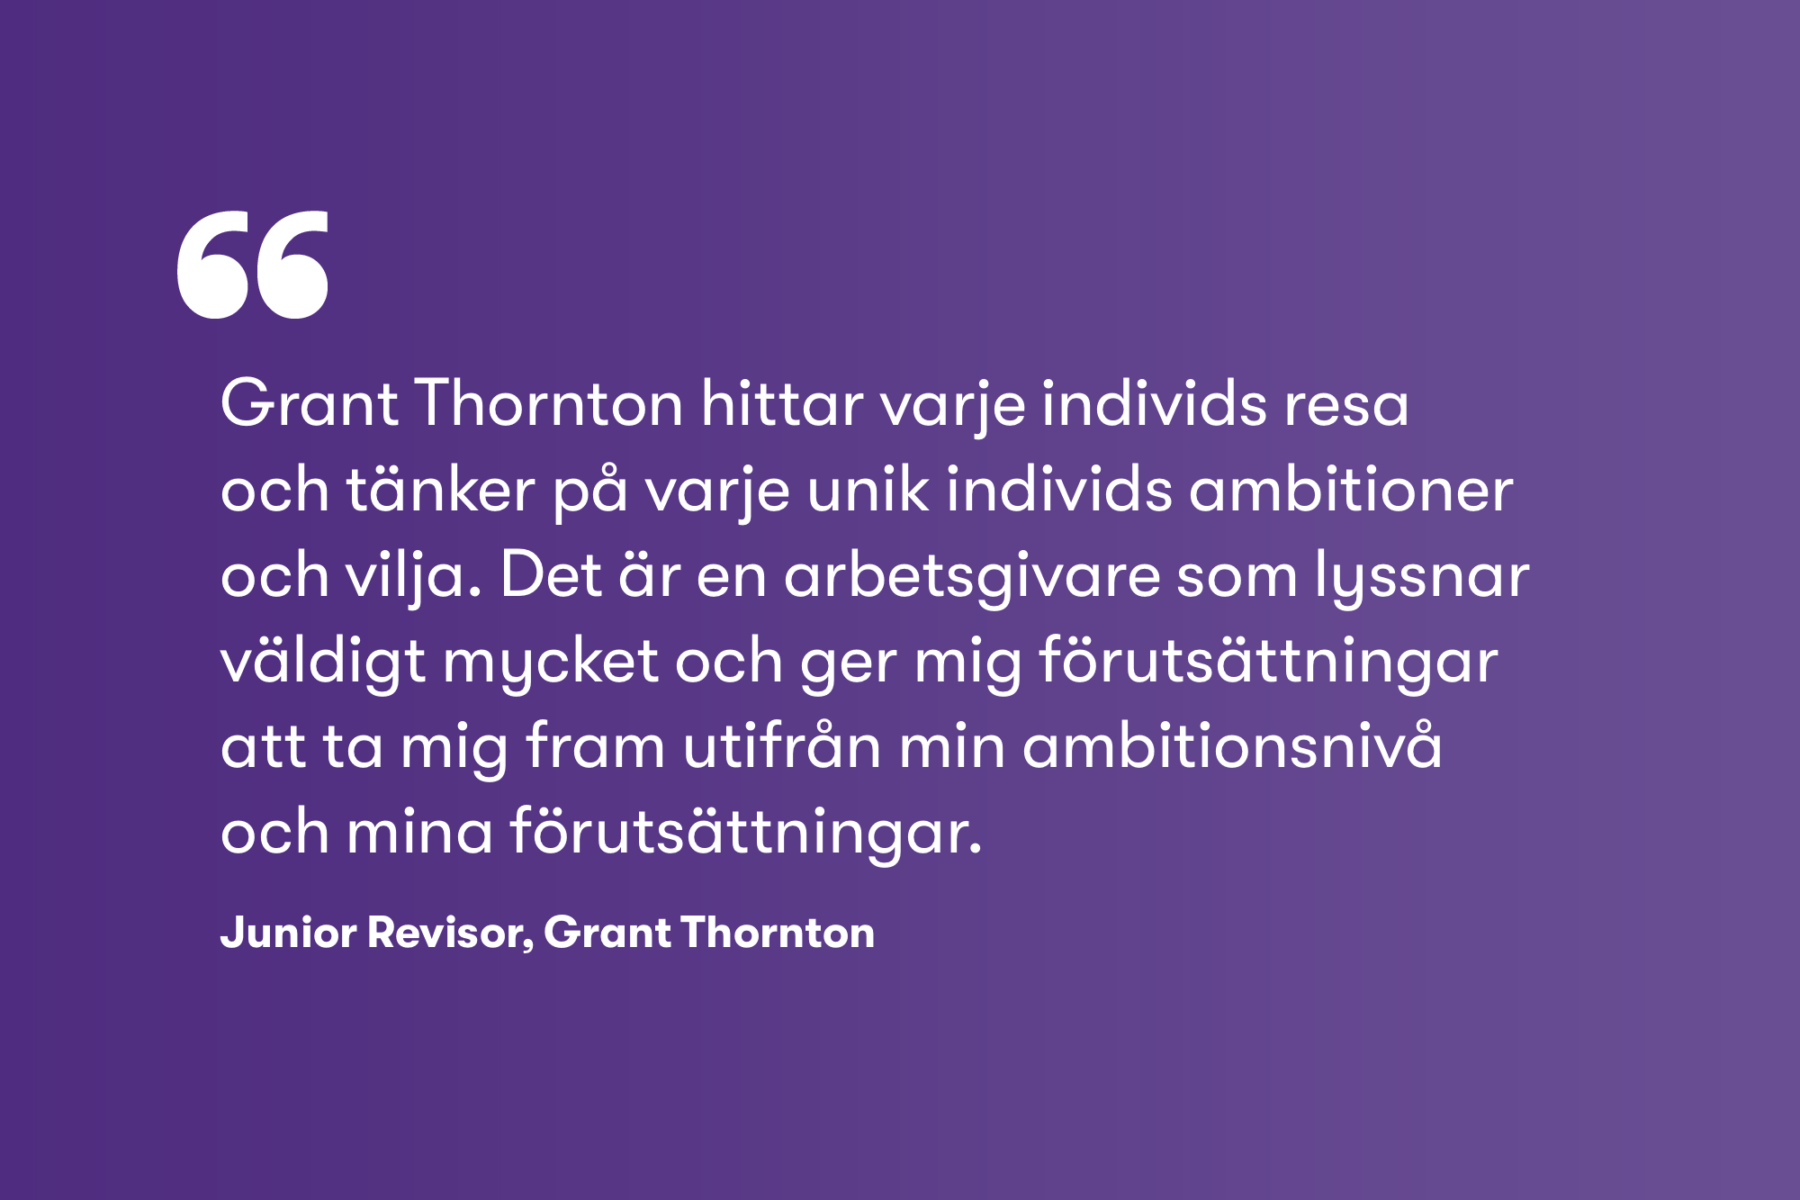 Grant Thornton citat